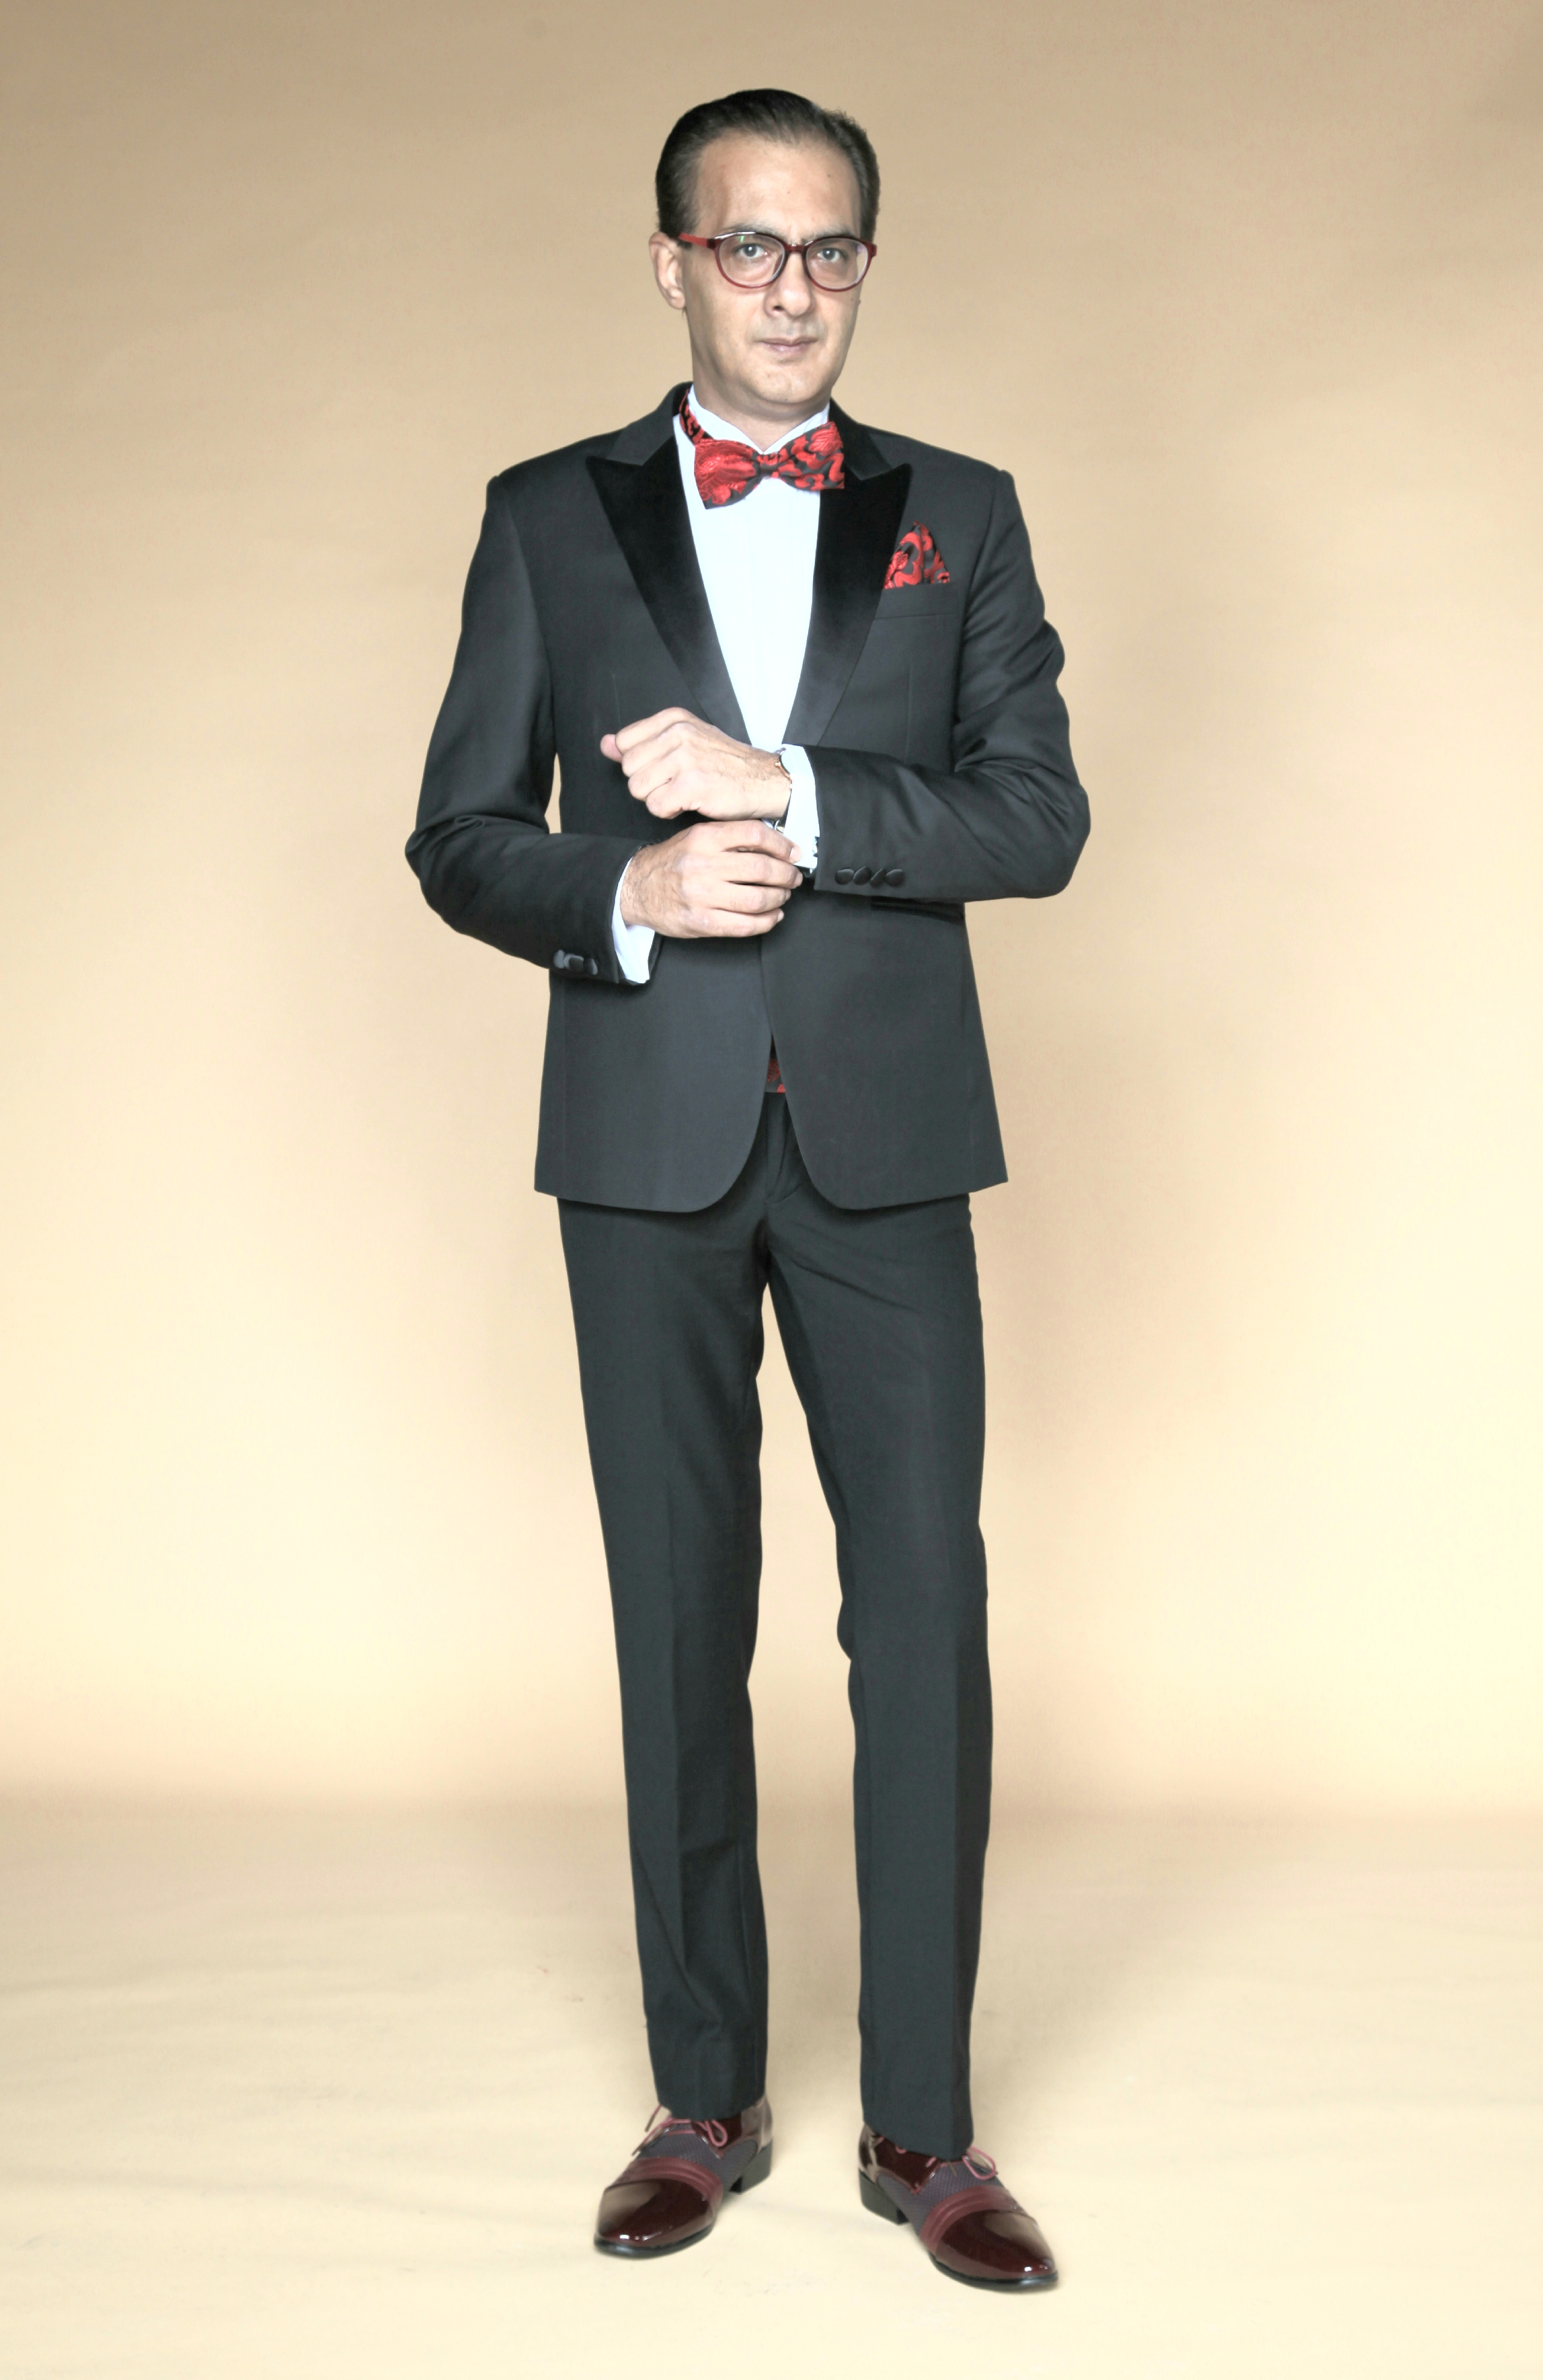 MST-5061-02-rent_rental_hire_tuxedo_suit_black_tie_suit_designer_suits_shop_tailor_tailors_singapore_wedding